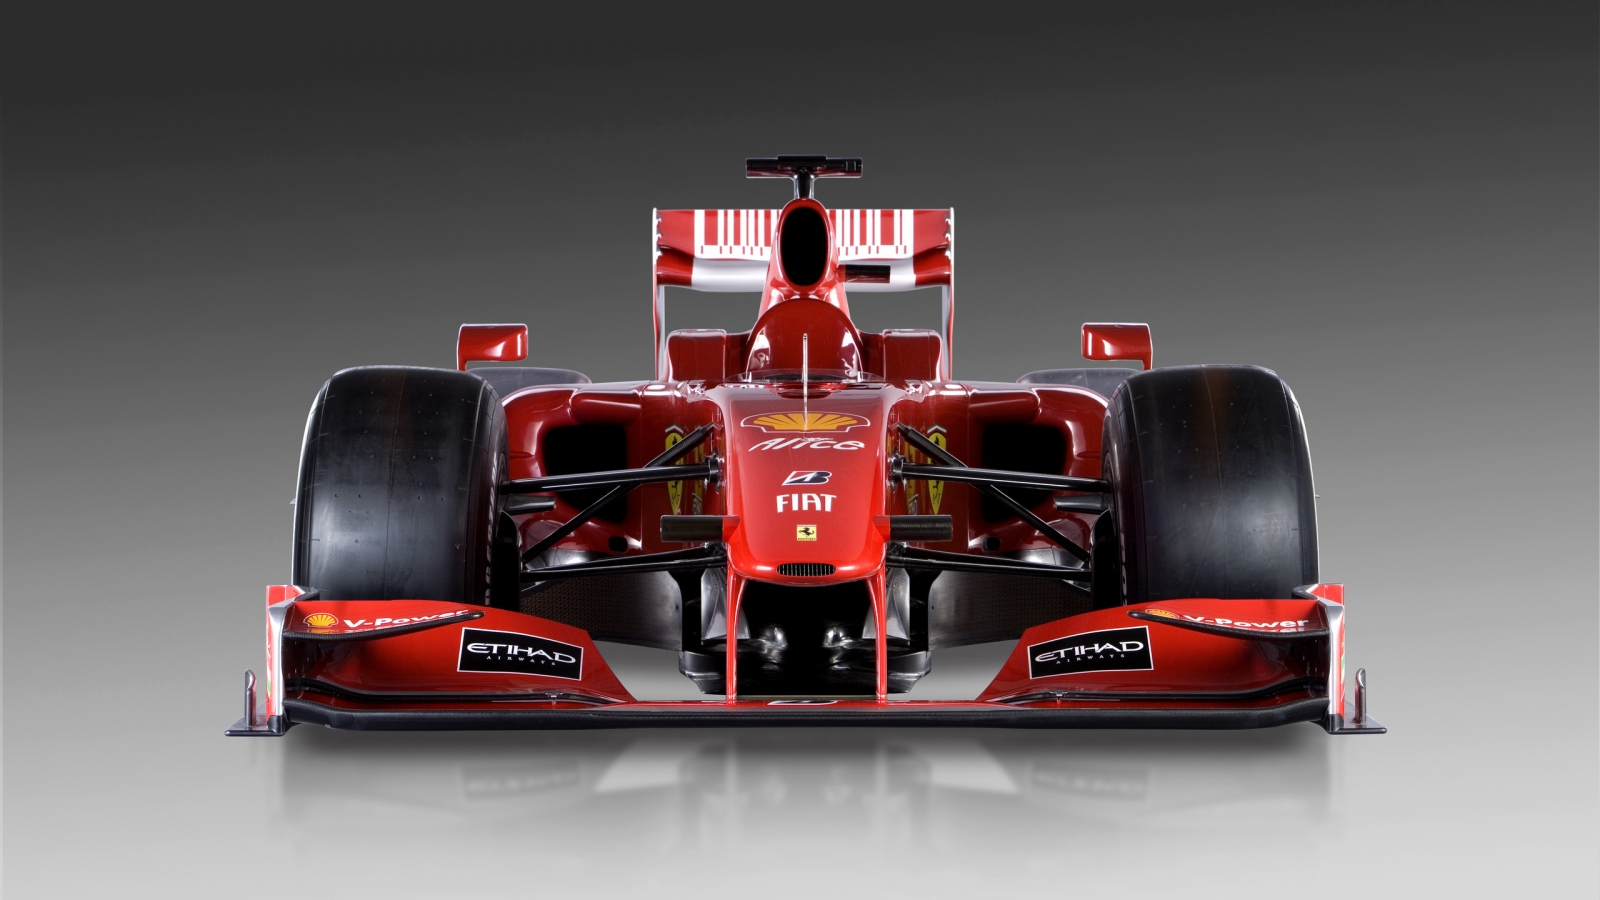 Ferrari Formula 1 for 1600 x 900 HDTV resolution